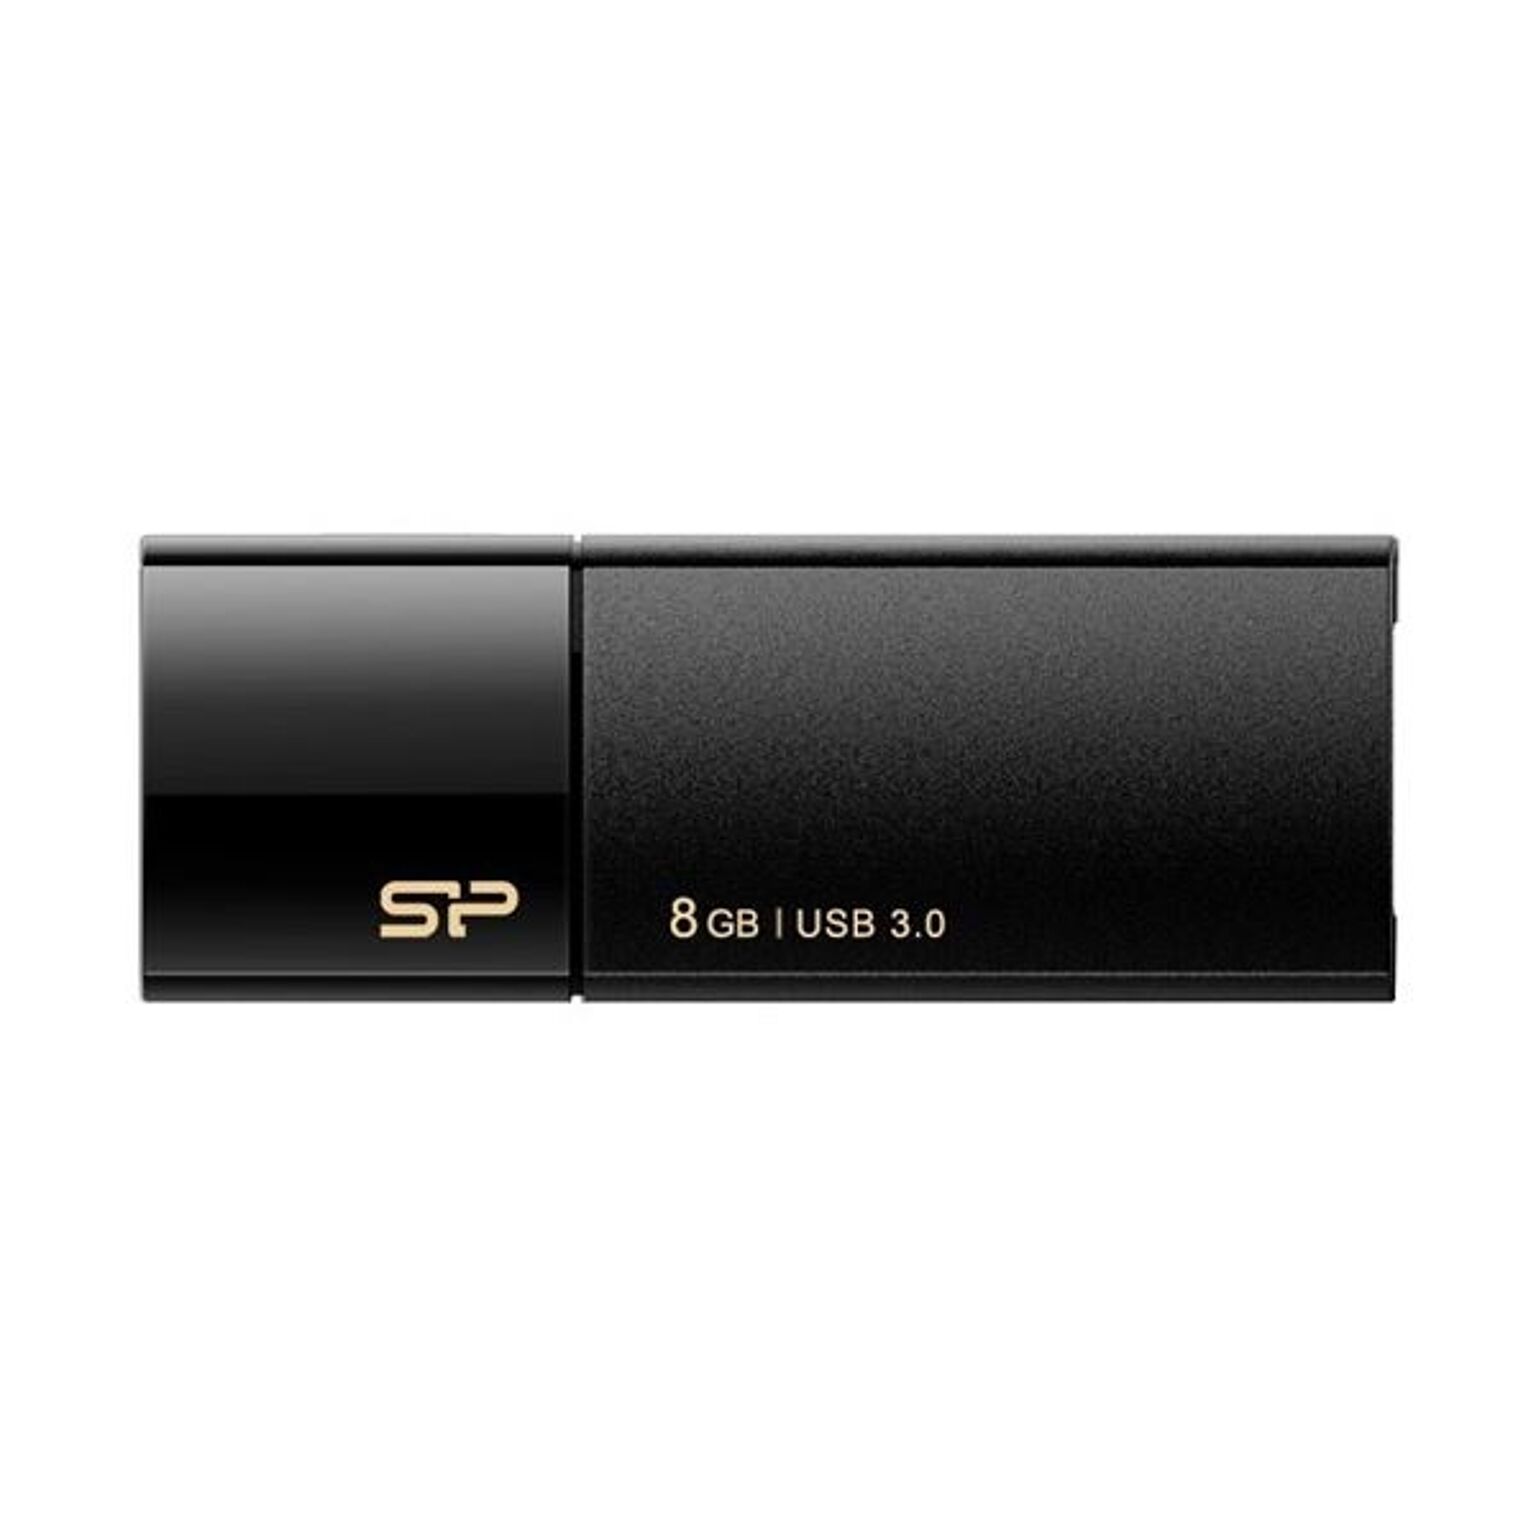 (まとめ) シリコンパワー USB3.0スライド式フラッシュメモリ 8GB ブラック SP008GBUF3B05V1K 1個 【×10セット】